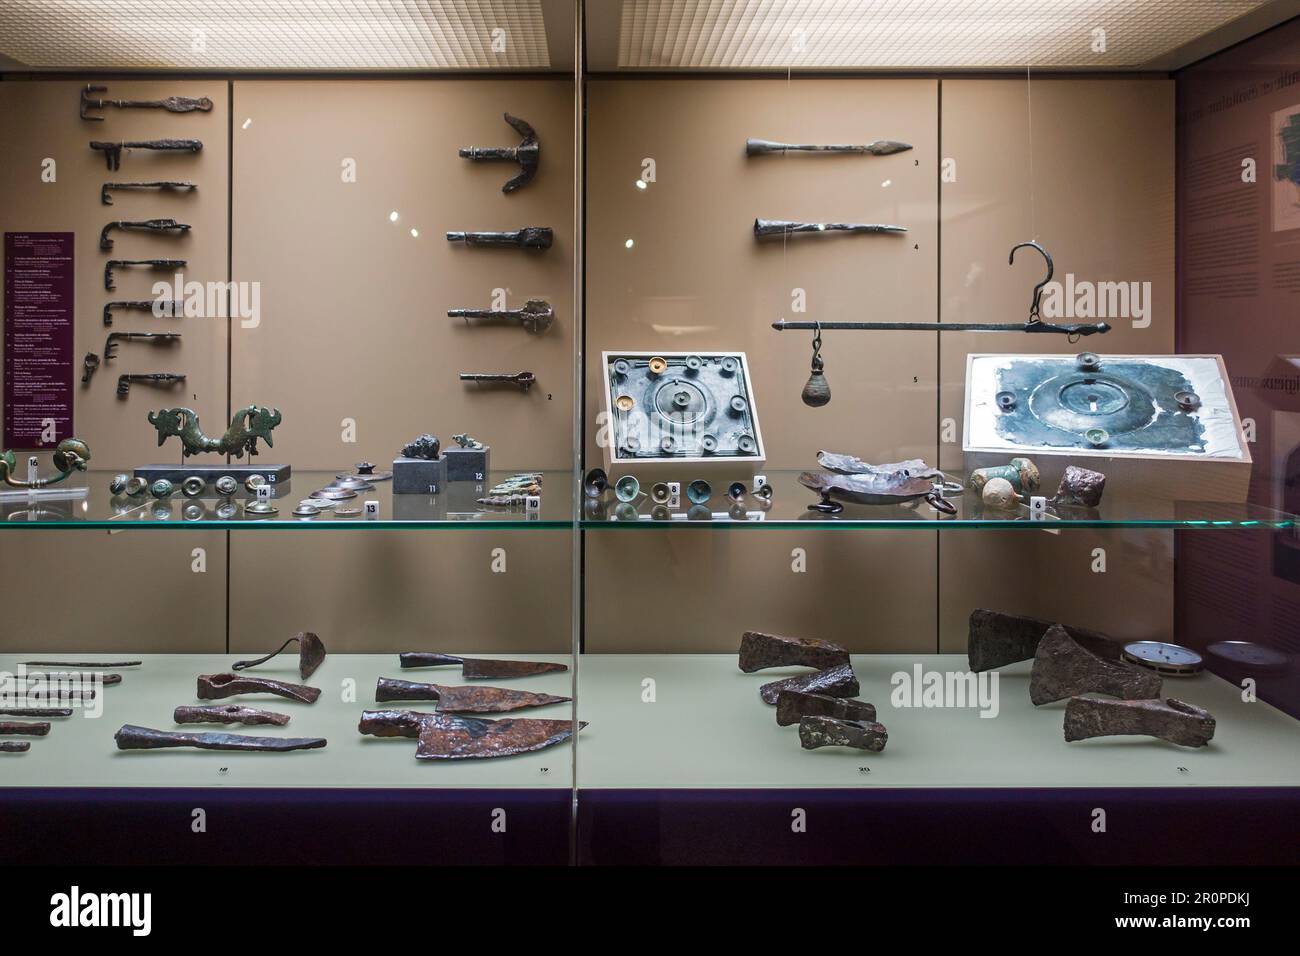 Des ustensiles protohistoriques comme des clés gaulâtres / gaulois, des couteaux et des haches exposés à l'Archéosite et au Musée d'Aubechies-Beloeil, Hainaut, Belgique Banque D'Images